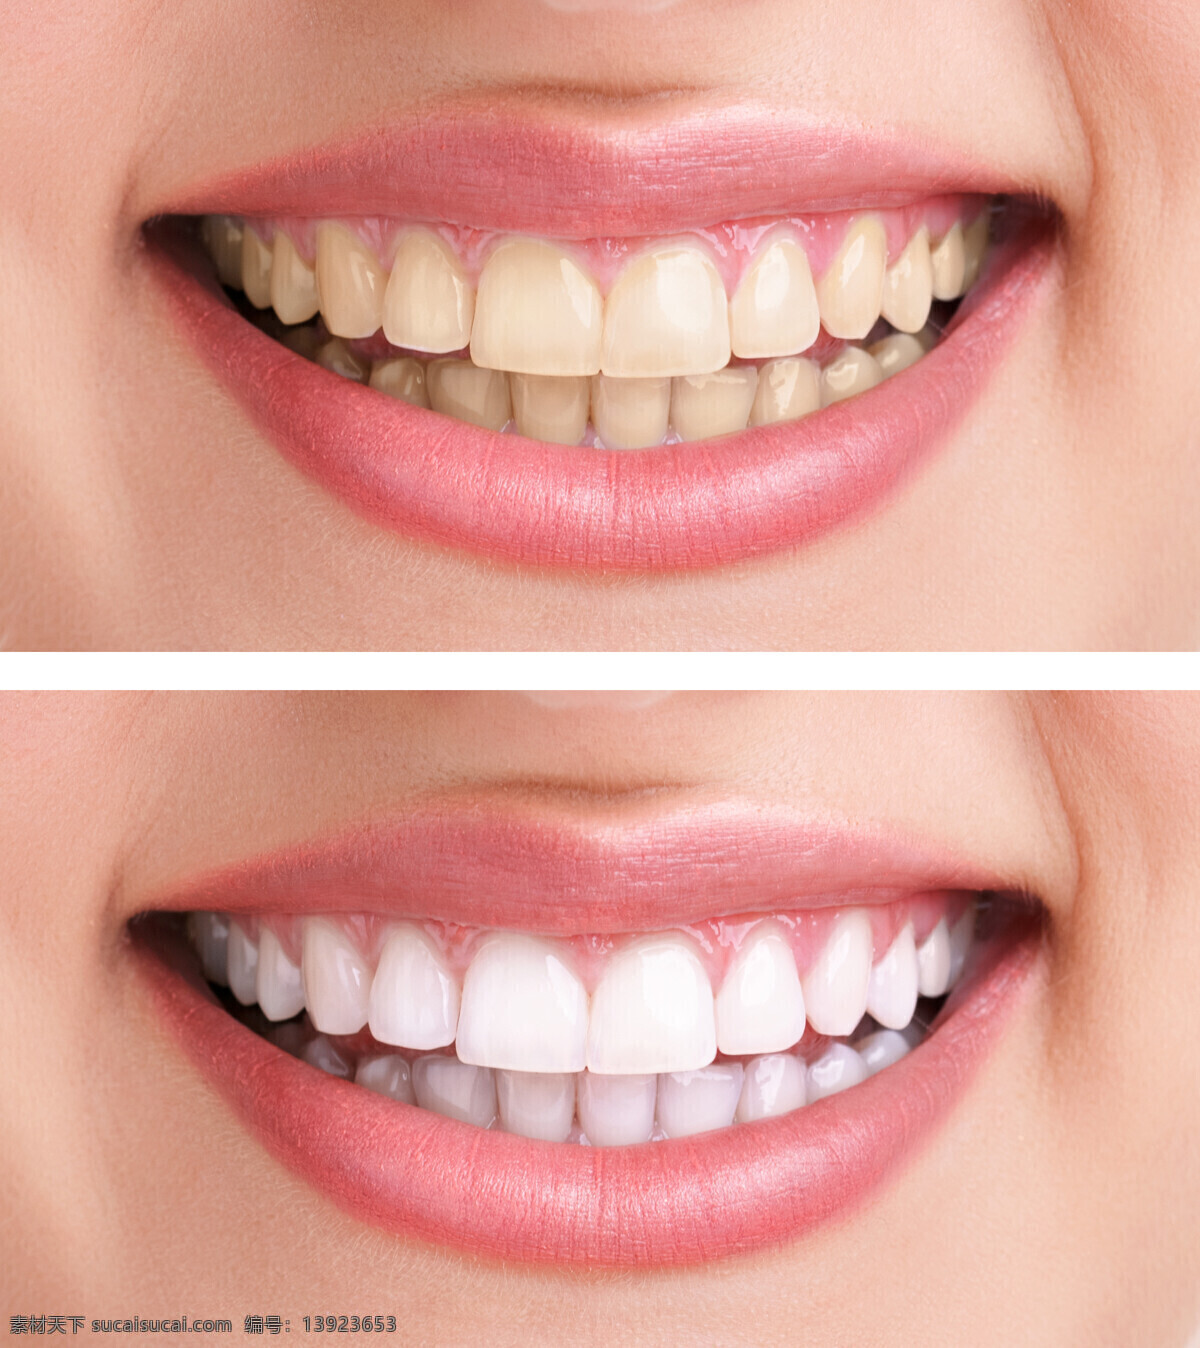 洁 牙 前后 对比 洁牙前后对比 牙齿美白 微笑 牙齿 牙科 口腔医疗 牙齿医疗 医疗科技 生活人物 人体器官图 人物图片